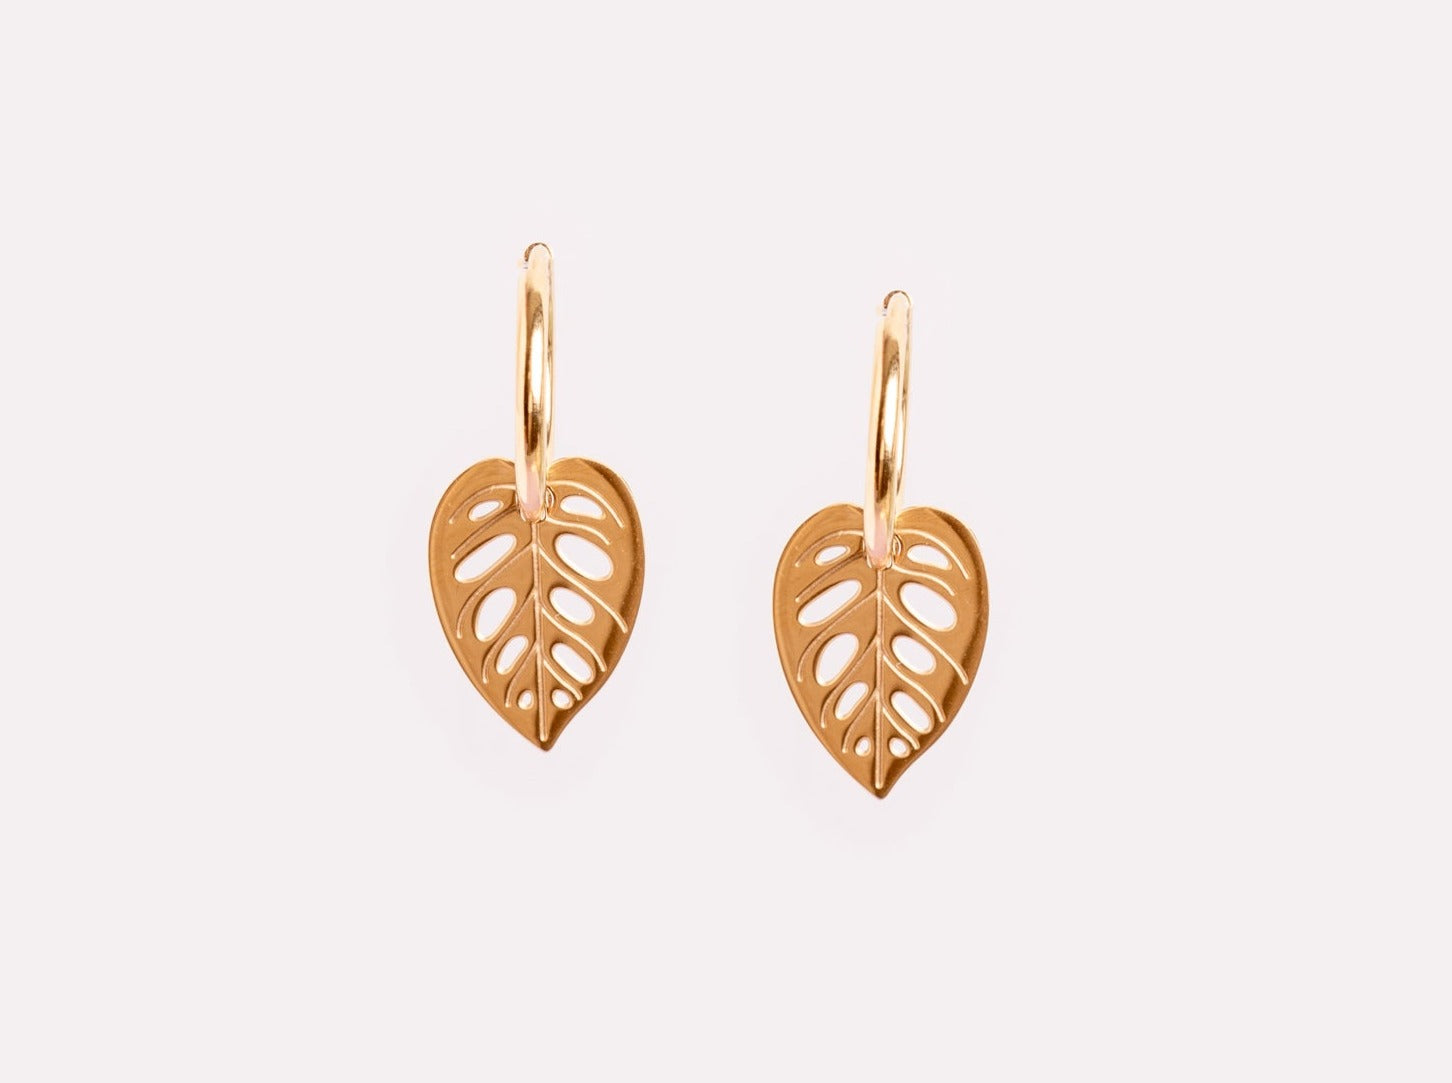 Golden Monstera Adansonii leaf earrings